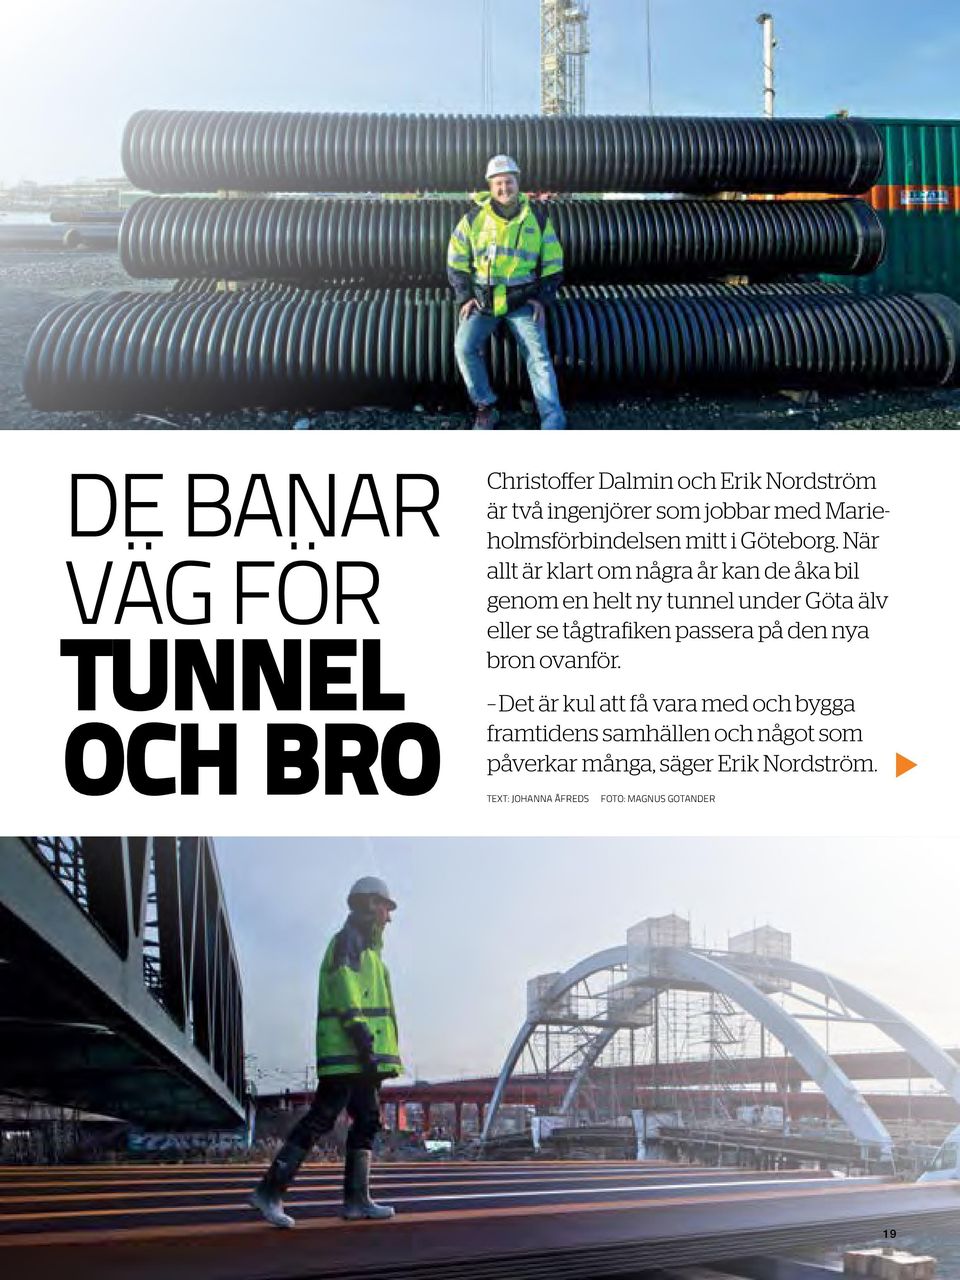 När allt är klart om några år kan de åka bil genom en helt ny tunnel under Göta älv eller se tågtrafiken